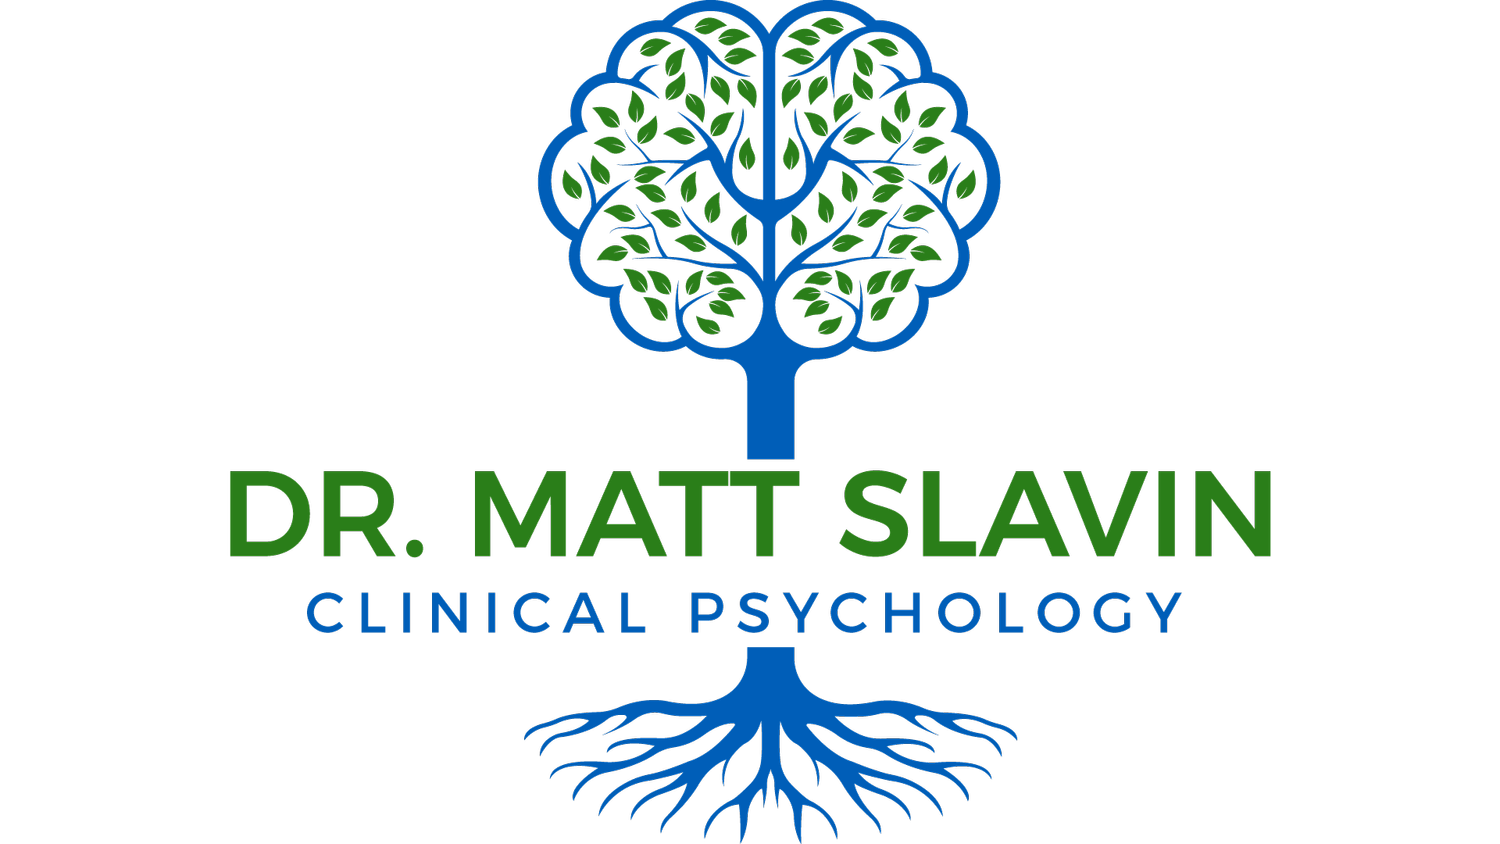 Dr Matt Slavin. Clinical Psychology.